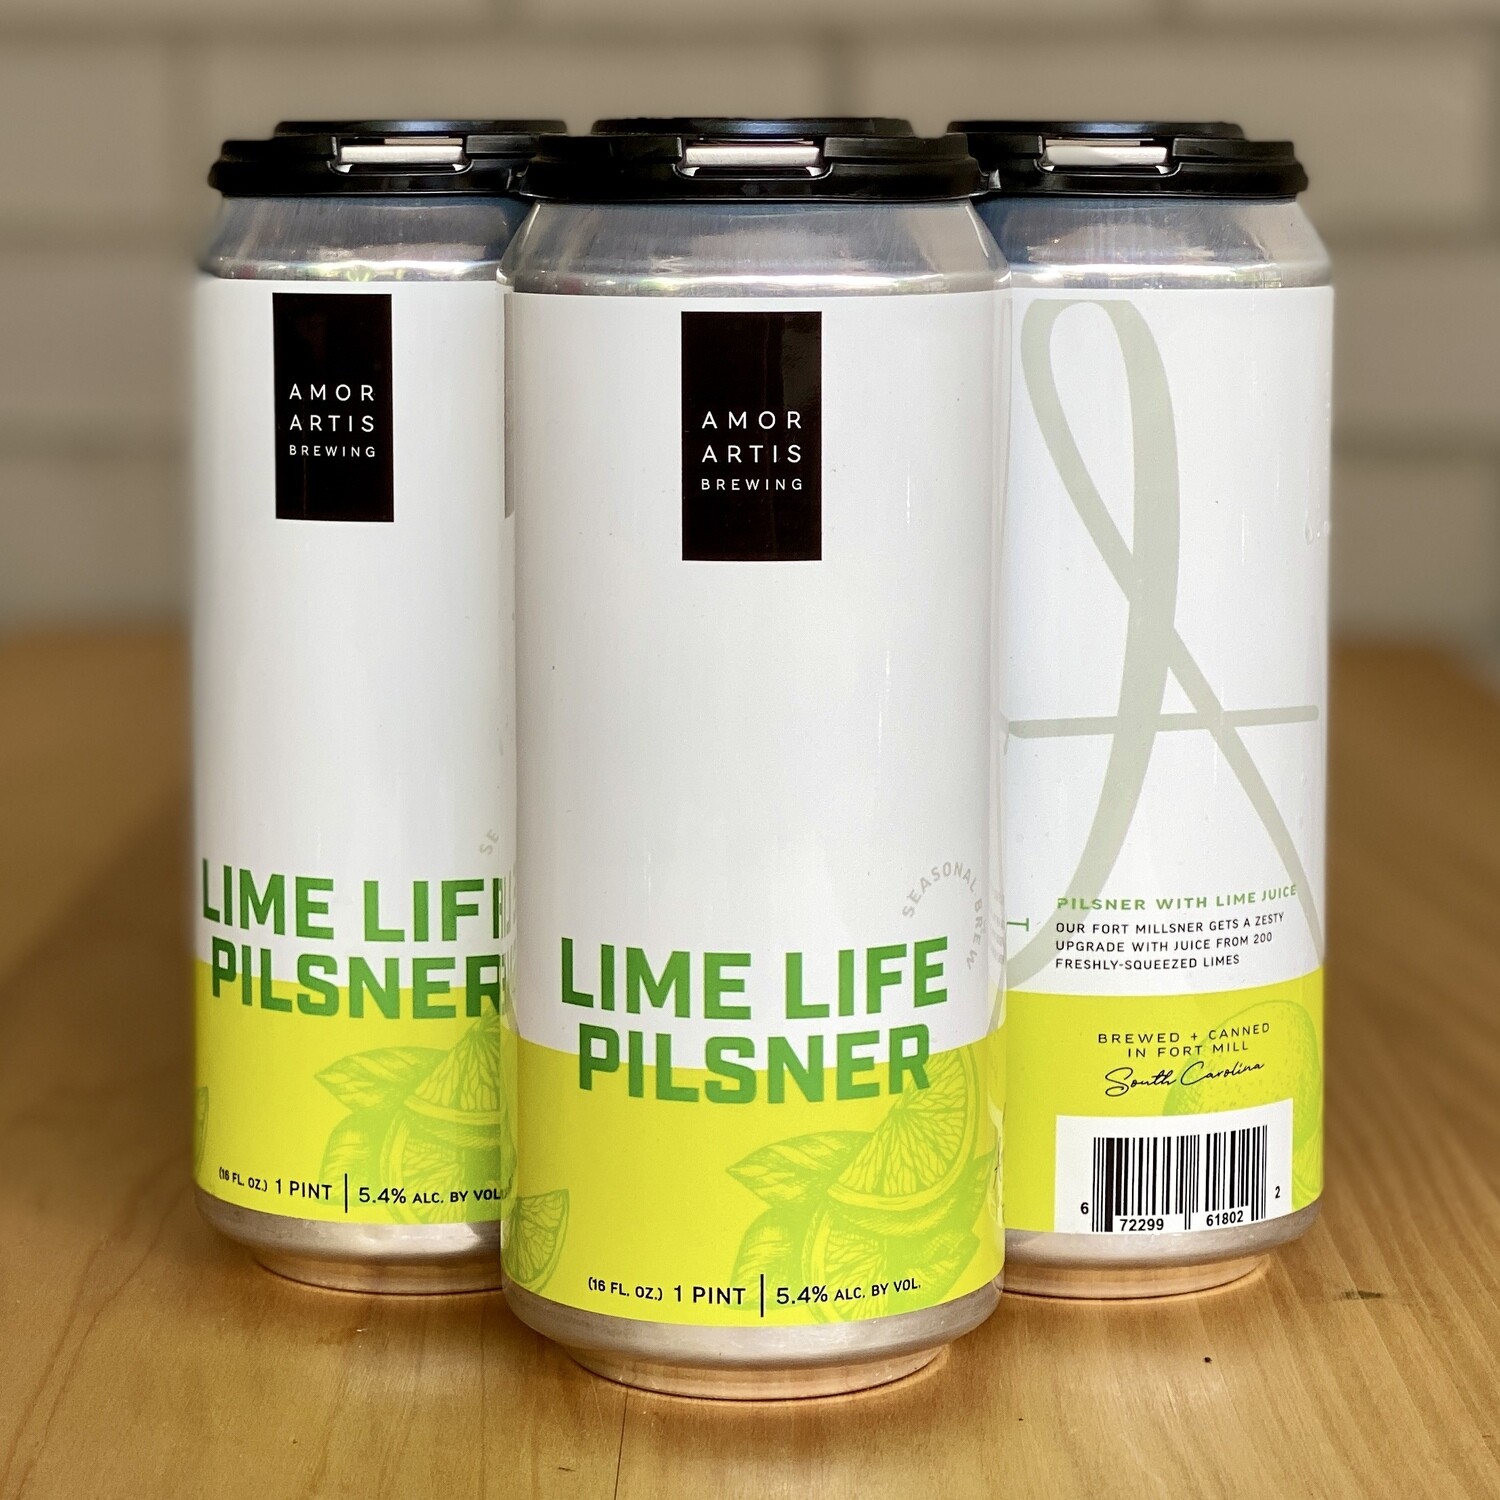 Amor Artis Lime Life Pilsner (4pk)